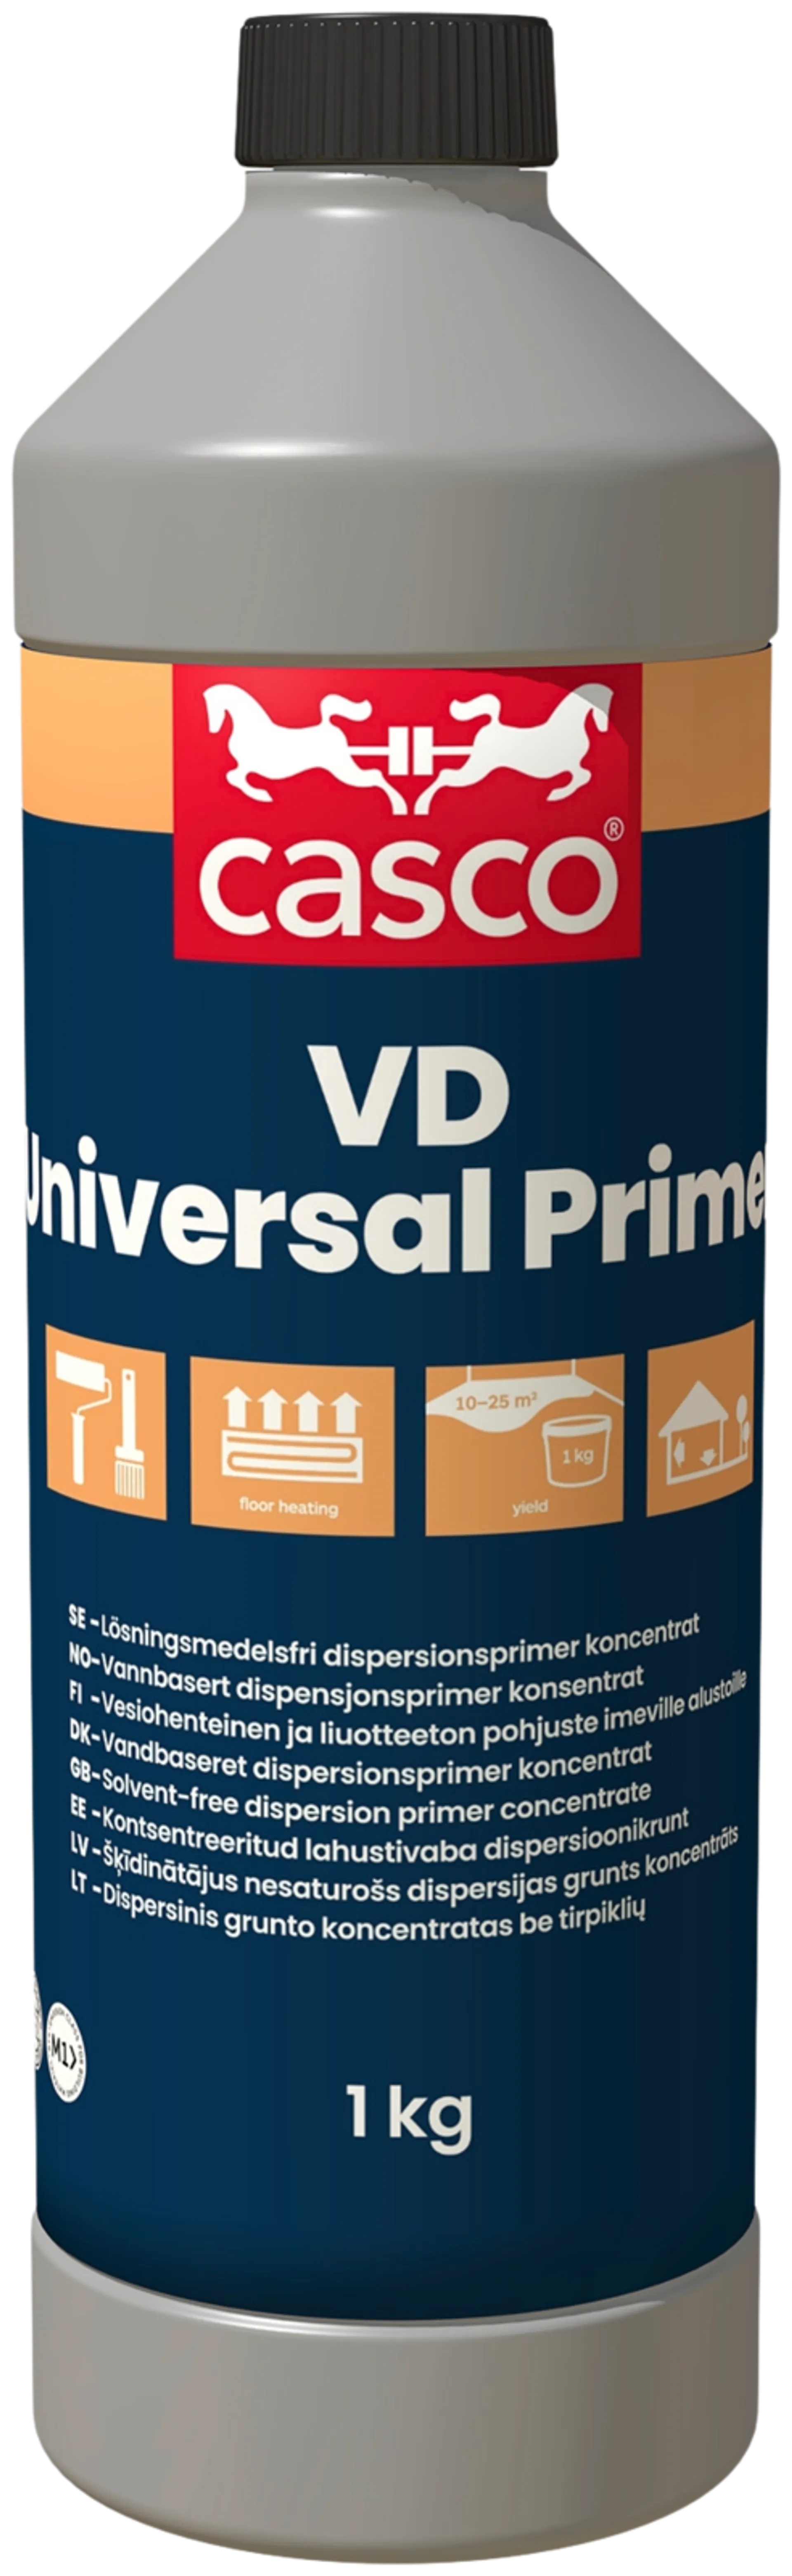 Casco VD Universal Primer 1kg pohjuste